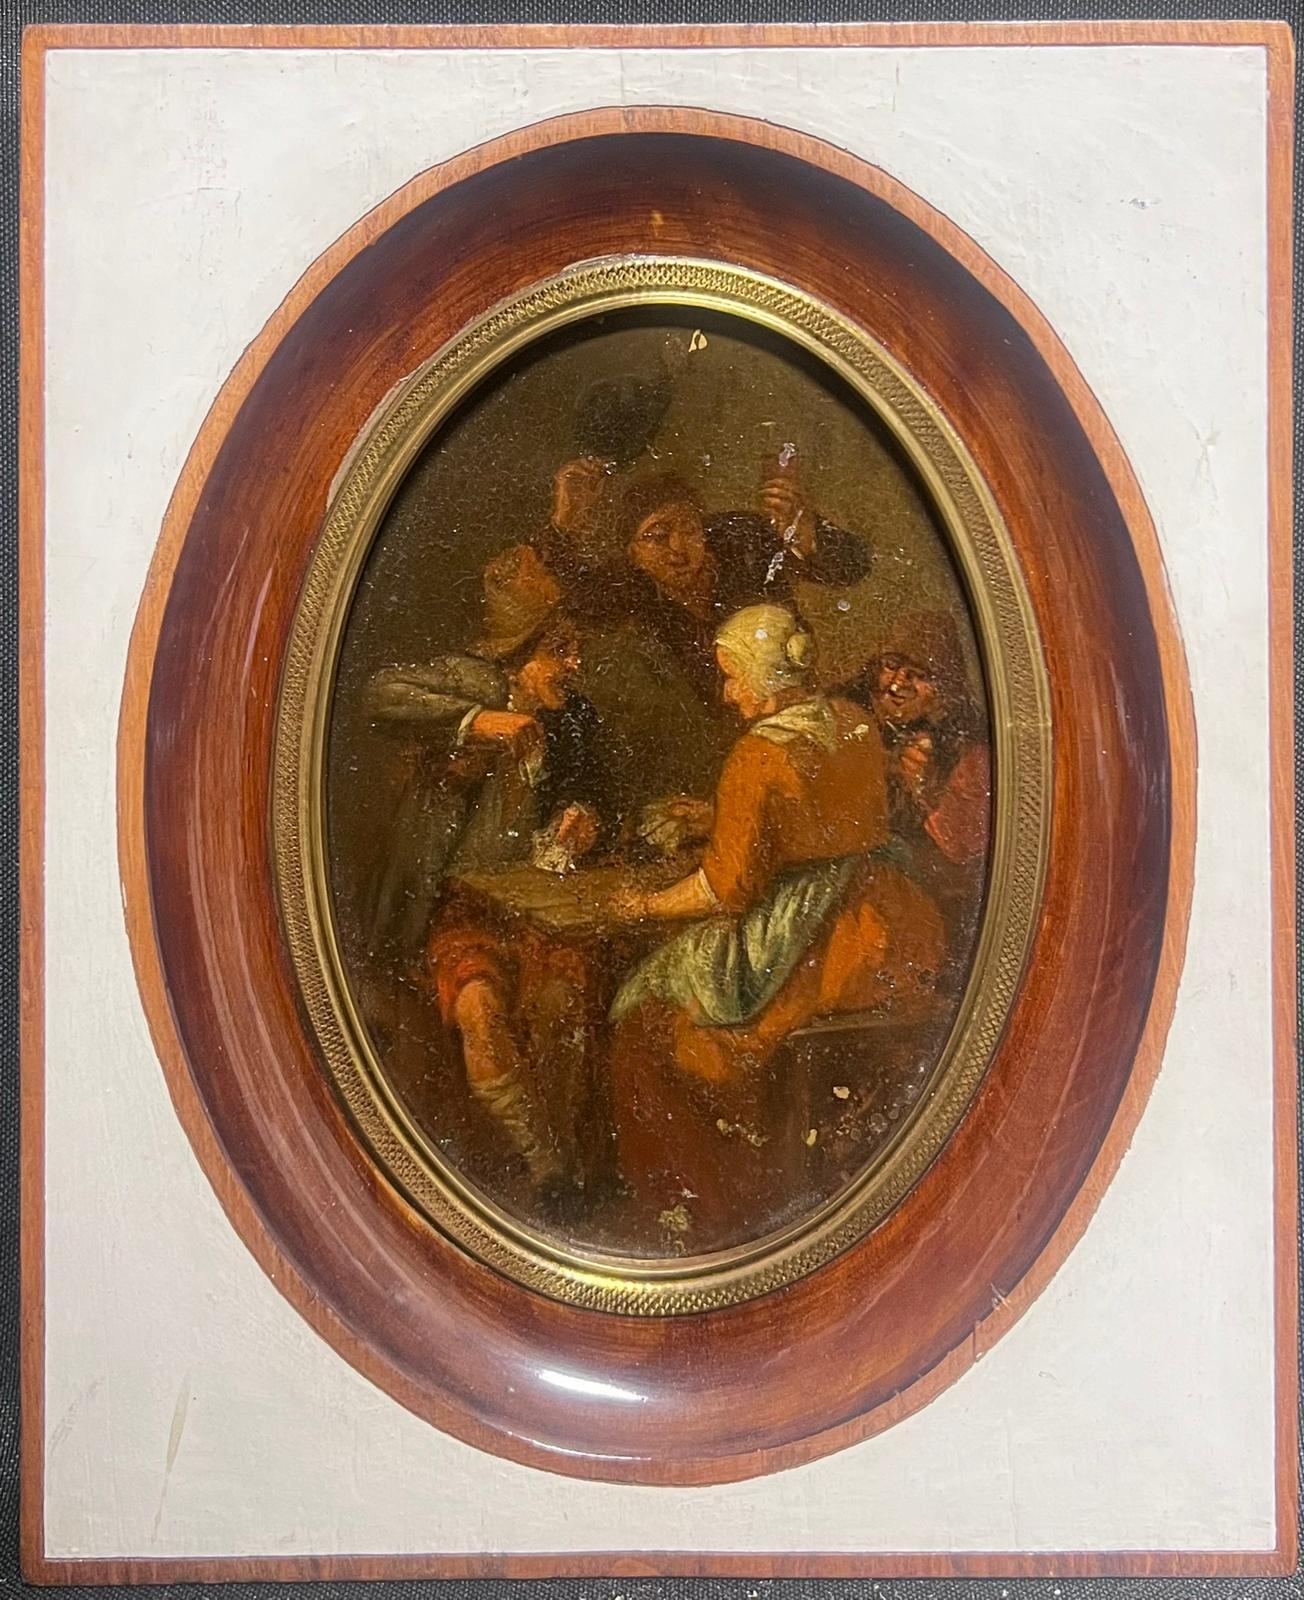 Figurative Painting Dutch Old Master - Peinture à l'huile hollandaise du 17ème siècle représentant des personnages de forme ovale dans un intérieur de taverne